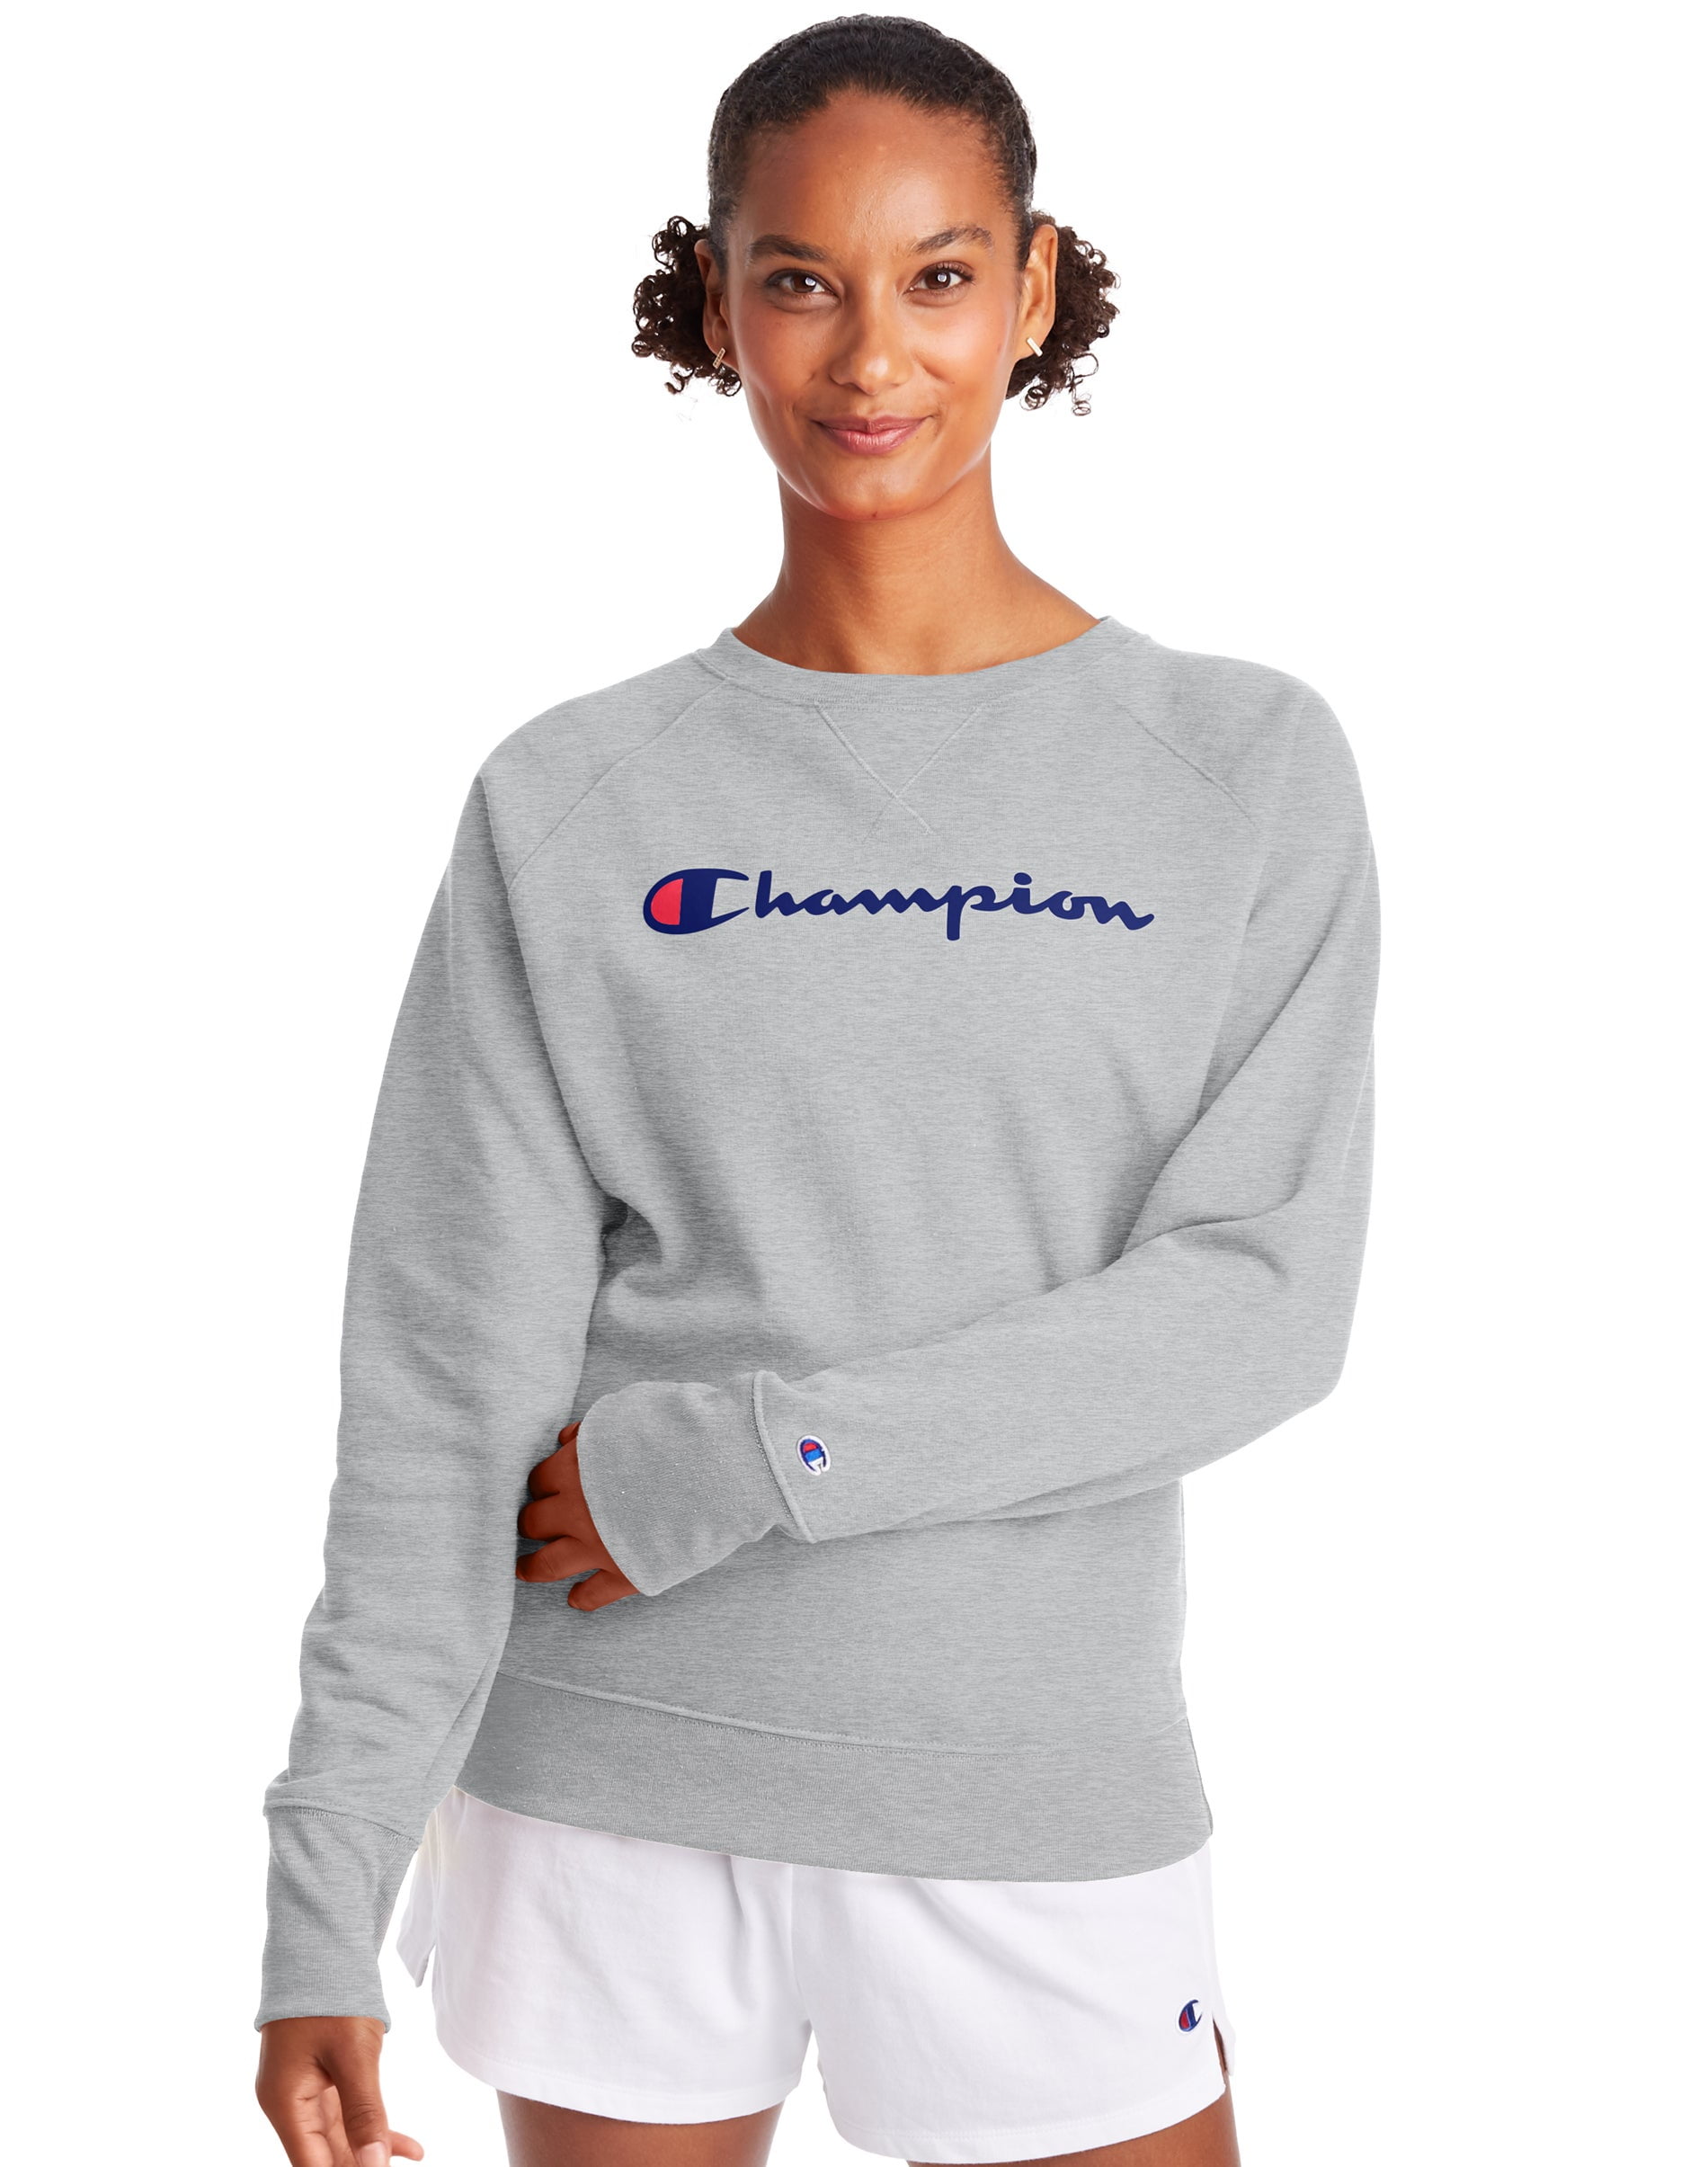 Champion Women's Powerblend Graphic Fleece Boyfriend Crewneck